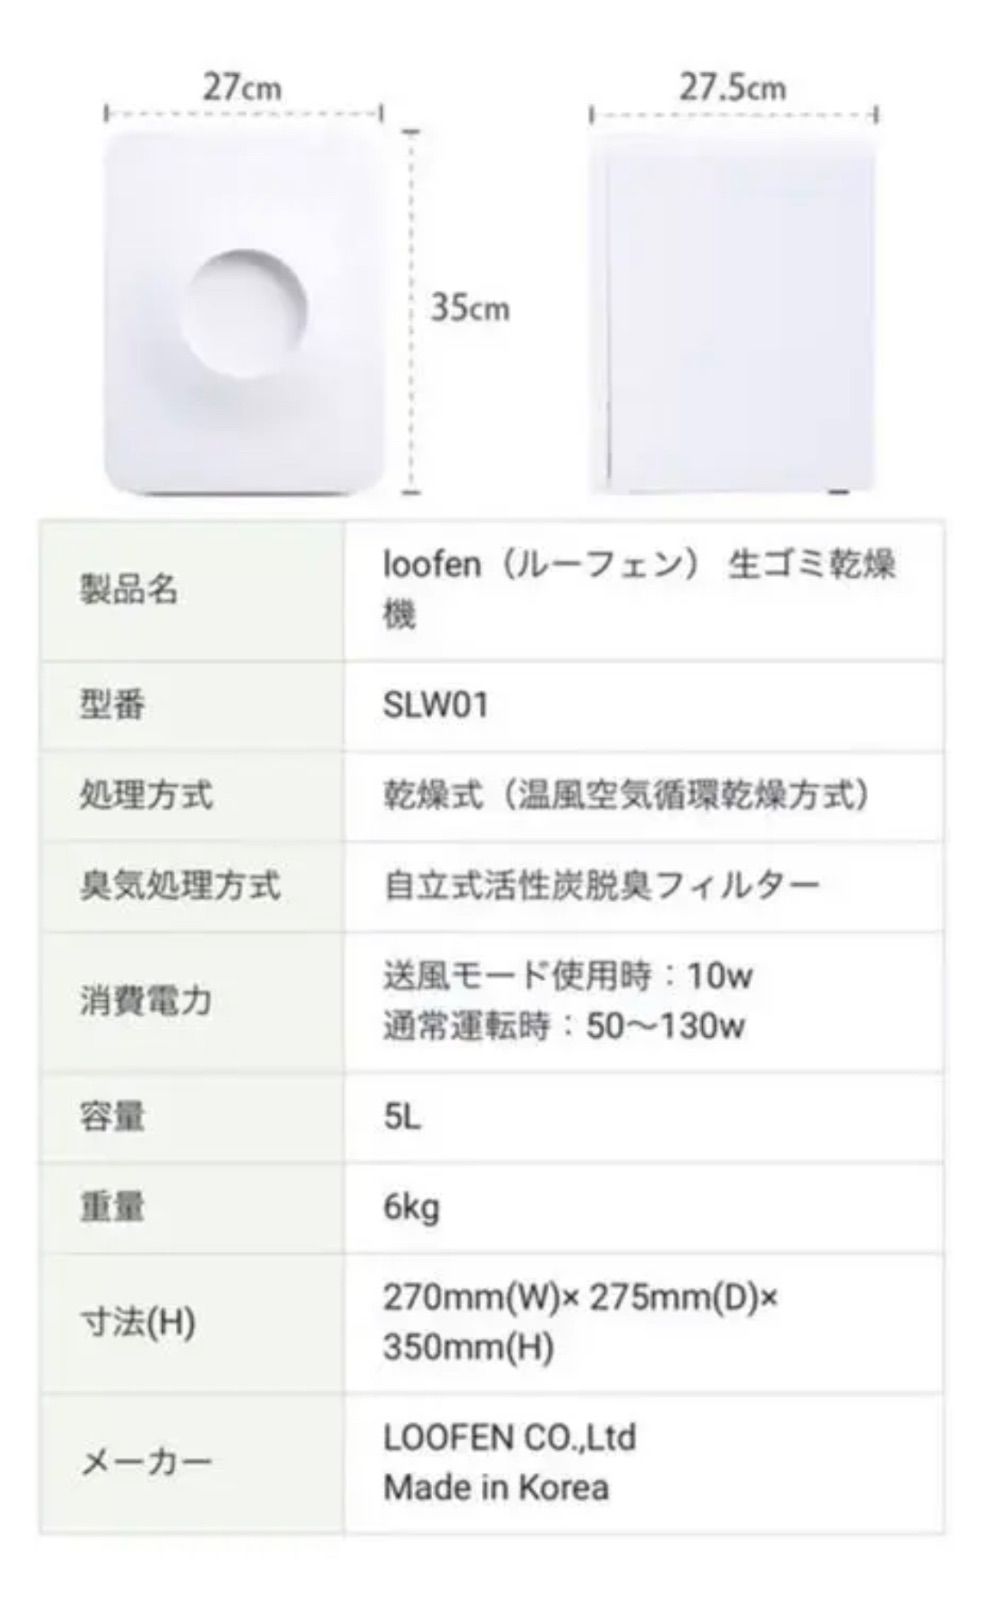 【未使用品】Loofen ルーフェン 生ゴミ処理機 SLW01 ホワイト - www.technoscience.co.jp